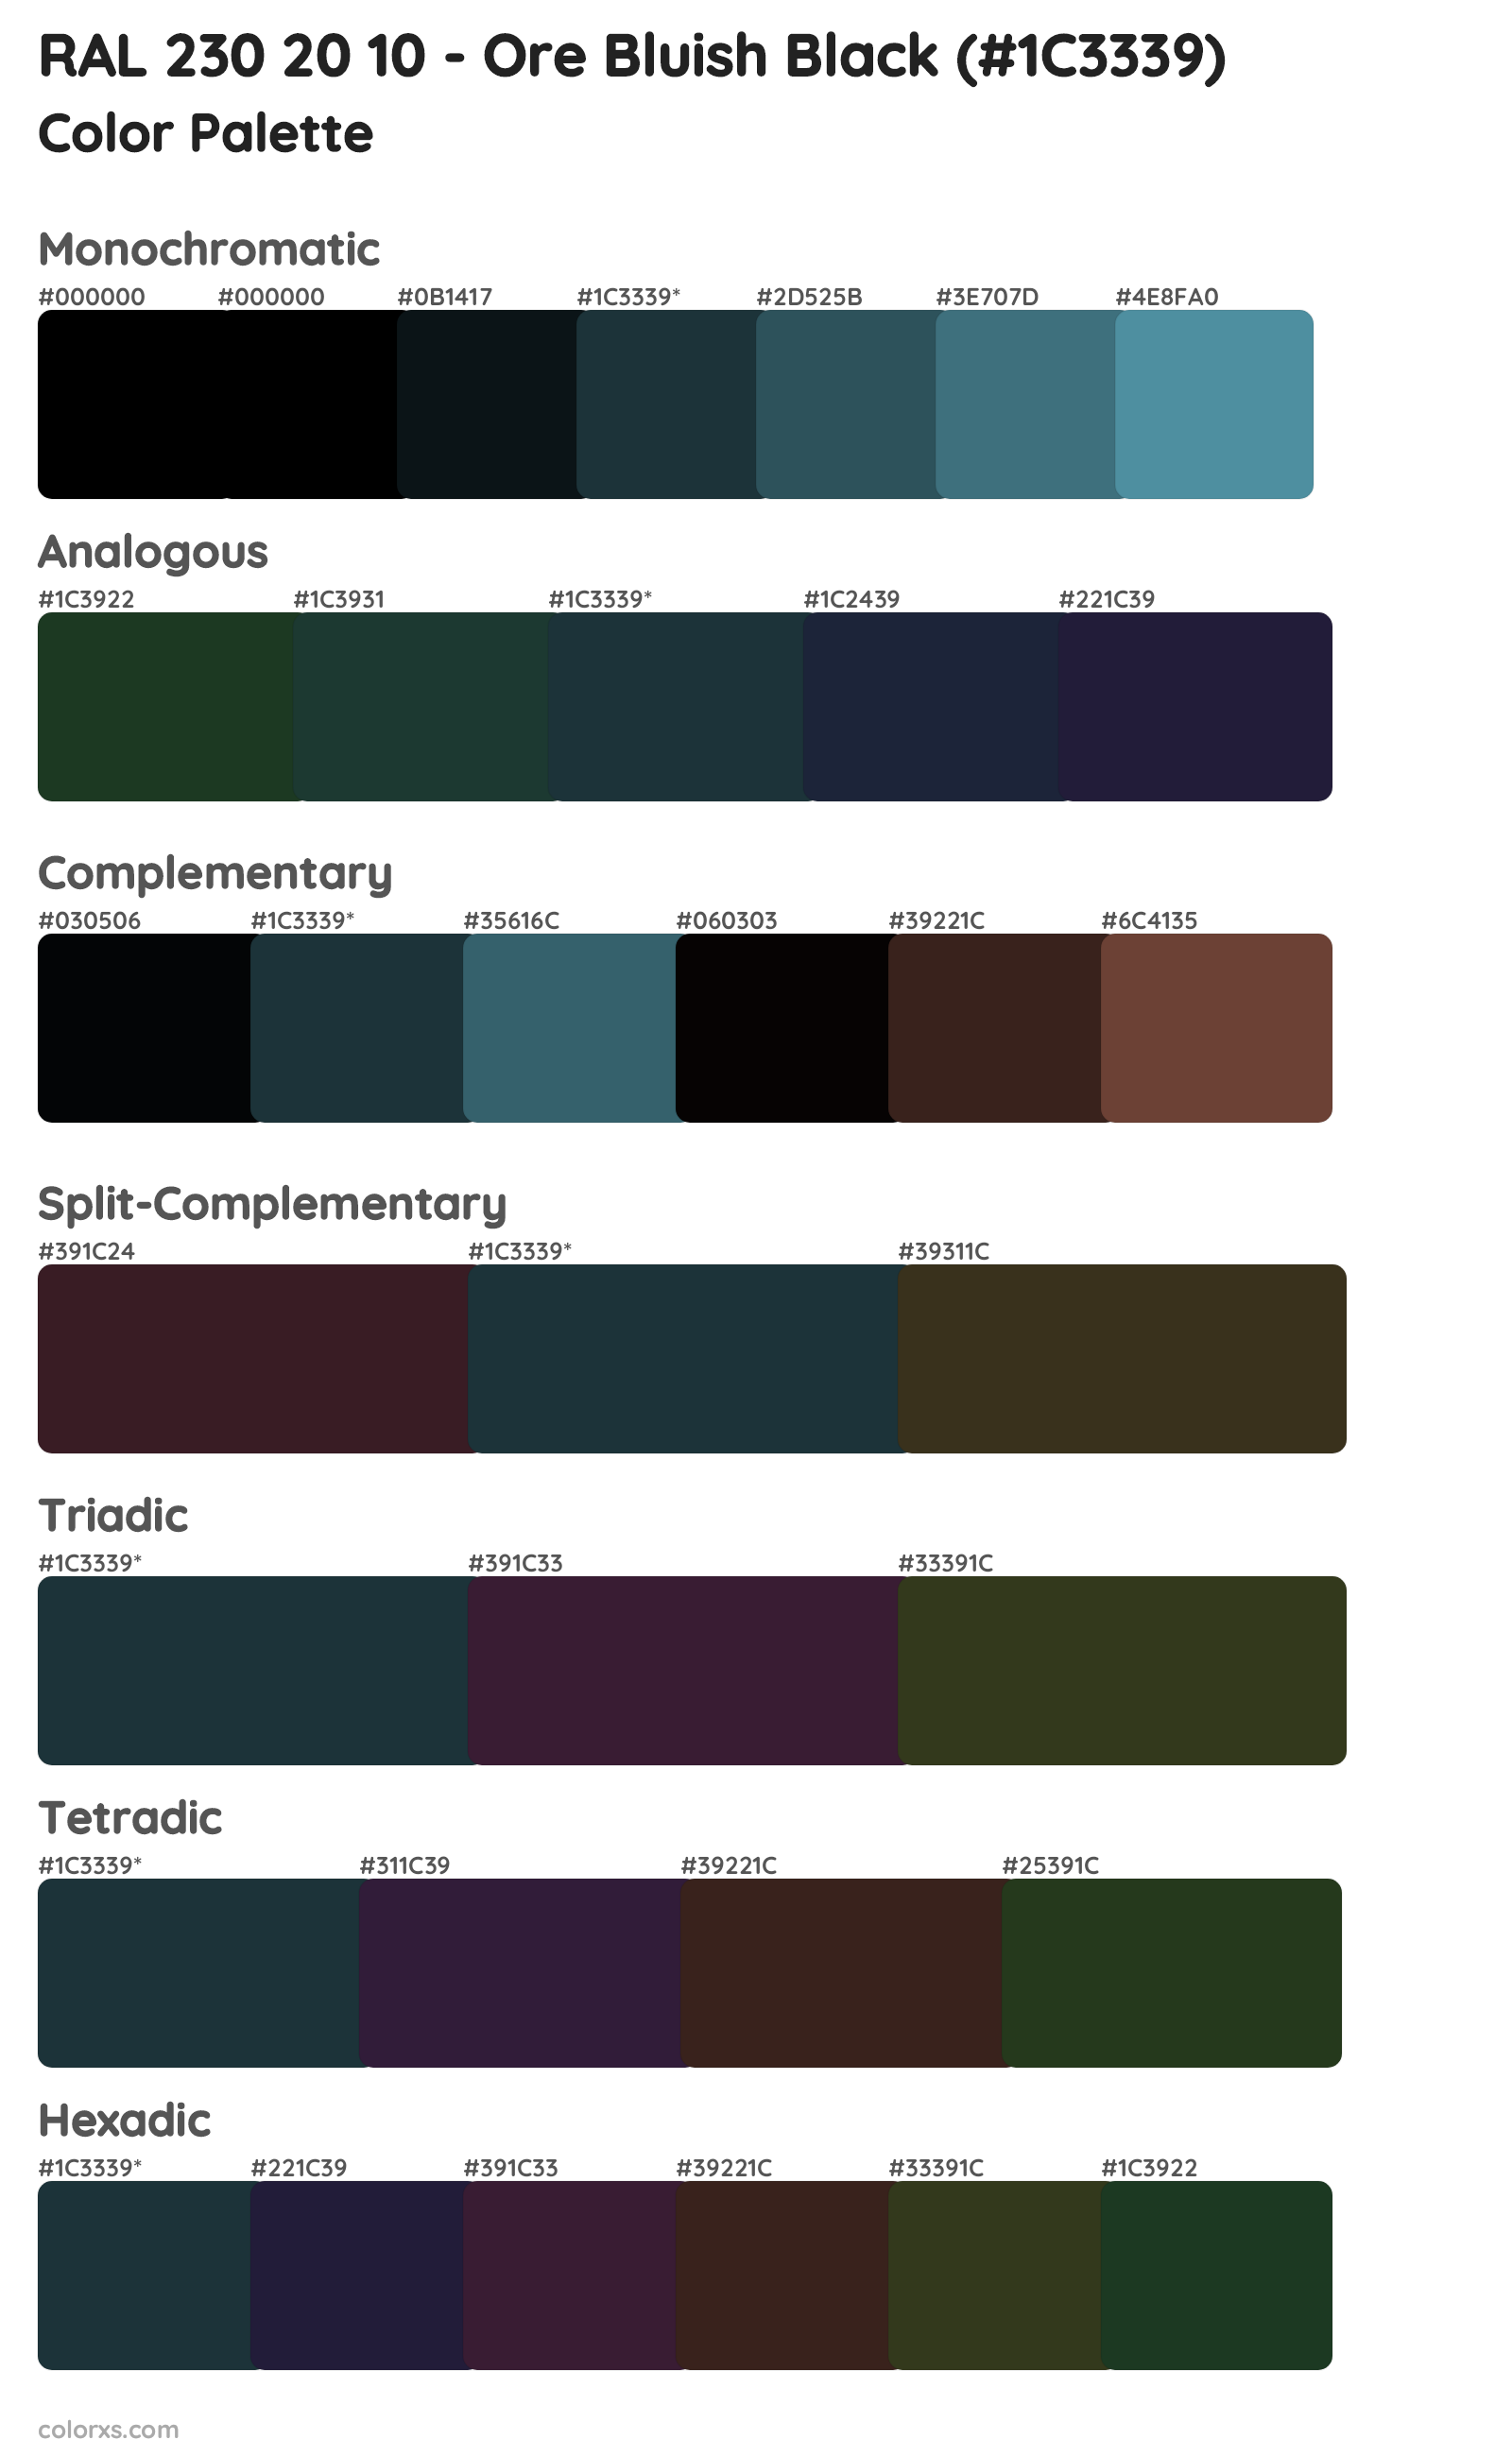 RAL 230 20 10 - Ore Bluish Black Color Scheme Palettes